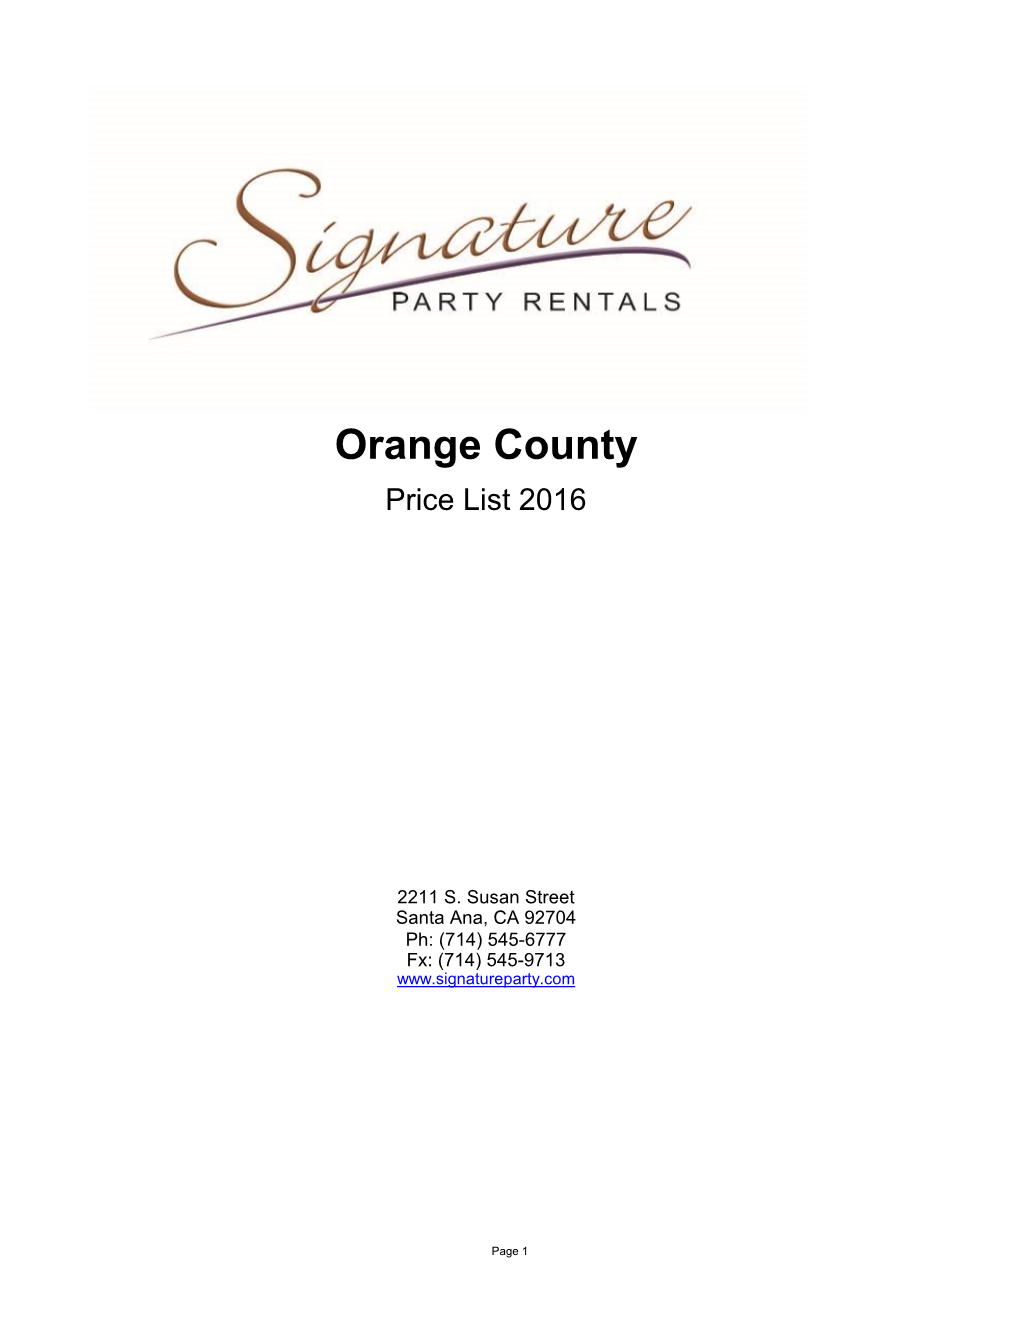 Orange County Price List 2016